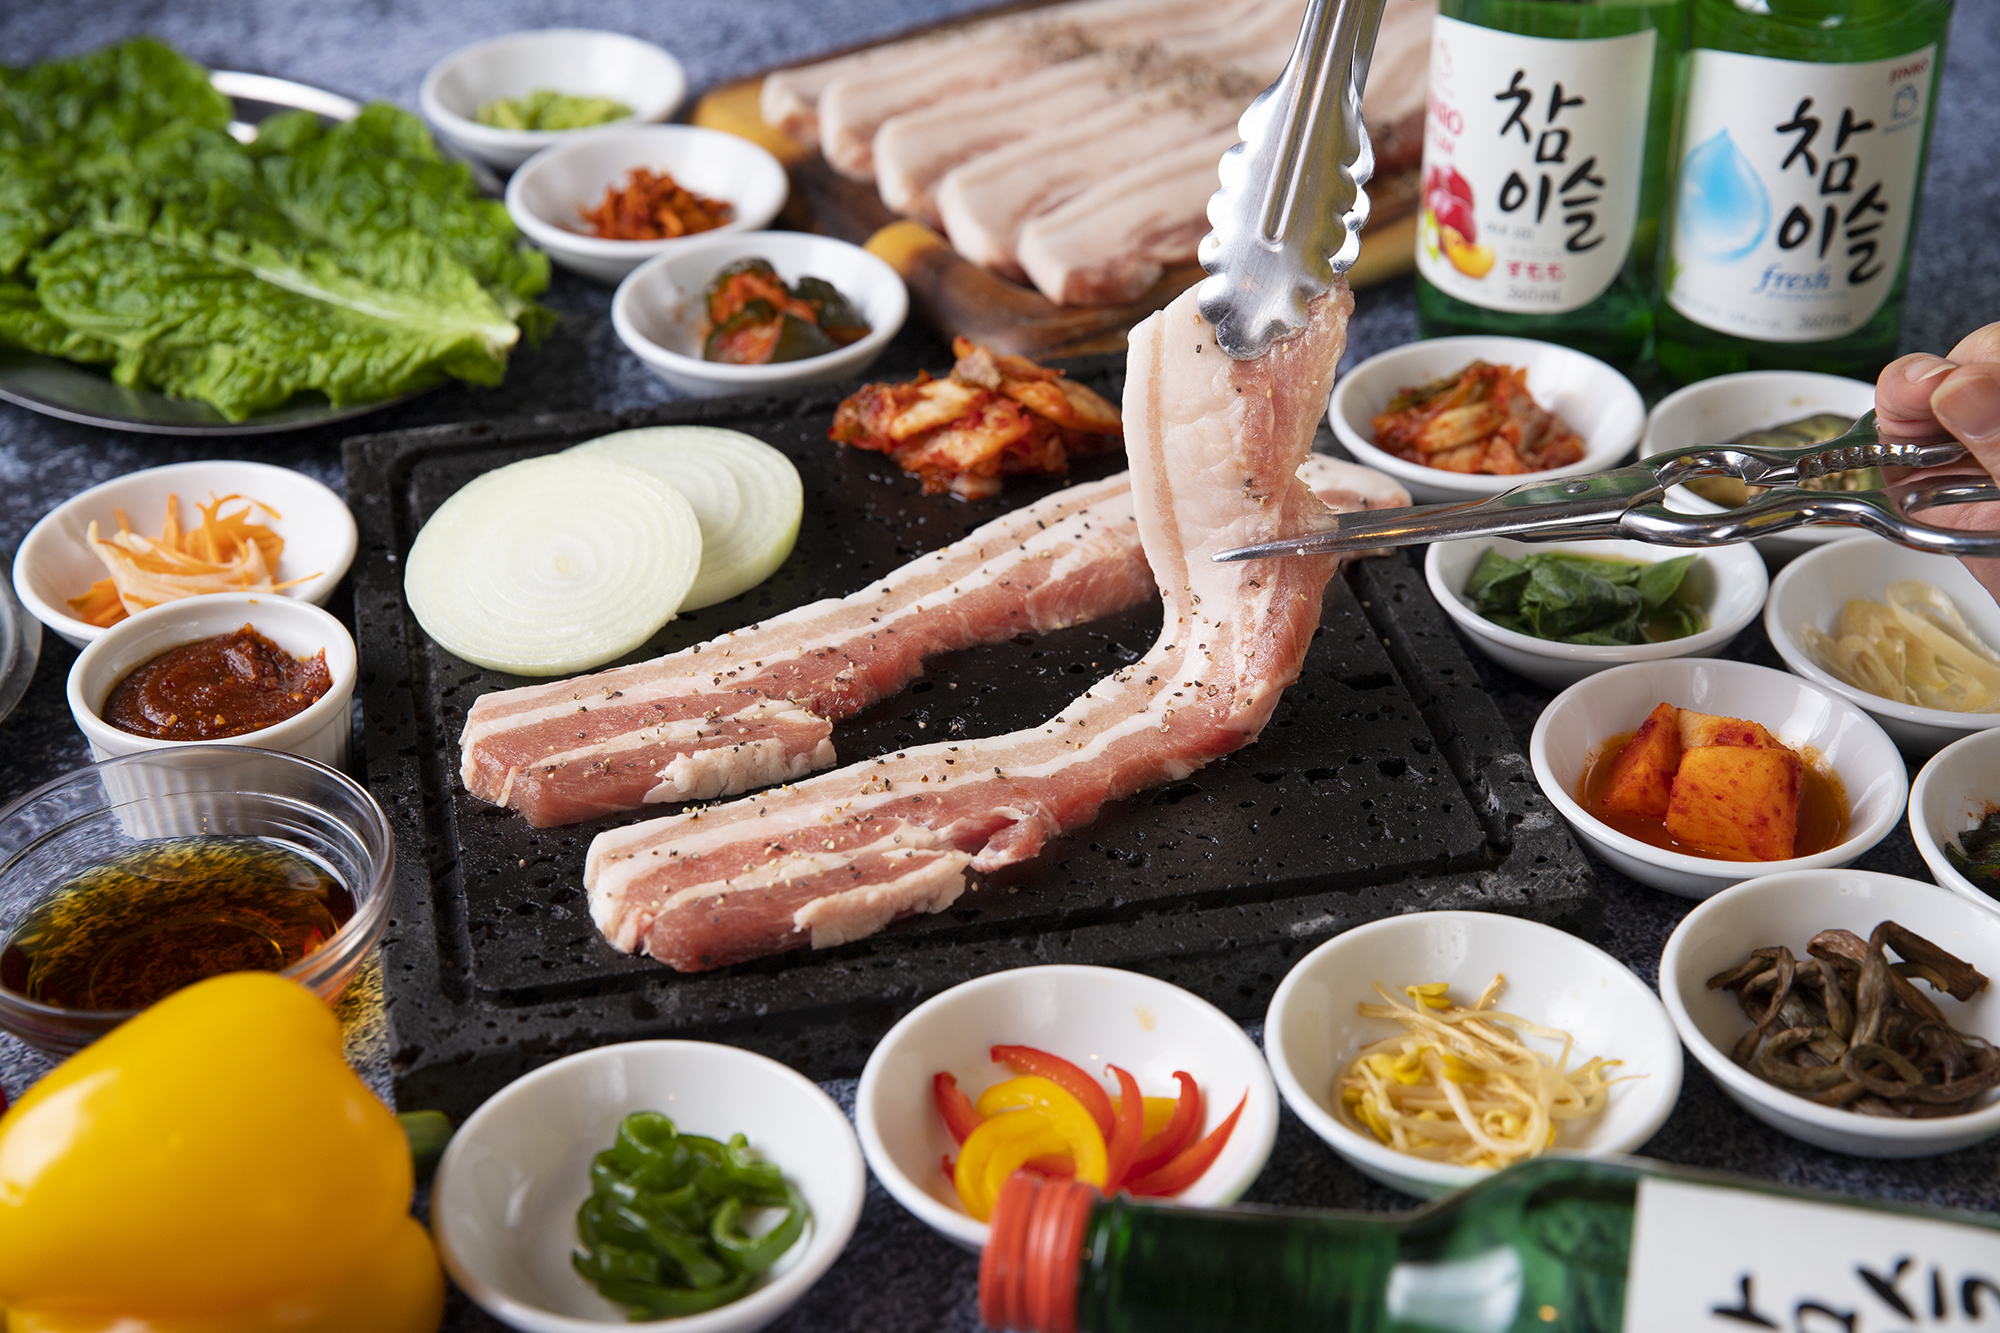 韓国チキンとサムギョプサル専門店 냠냠냠 ニャムニャムニャム が奈良 大和西大寺に 3月22日 月 初登場 Newscast